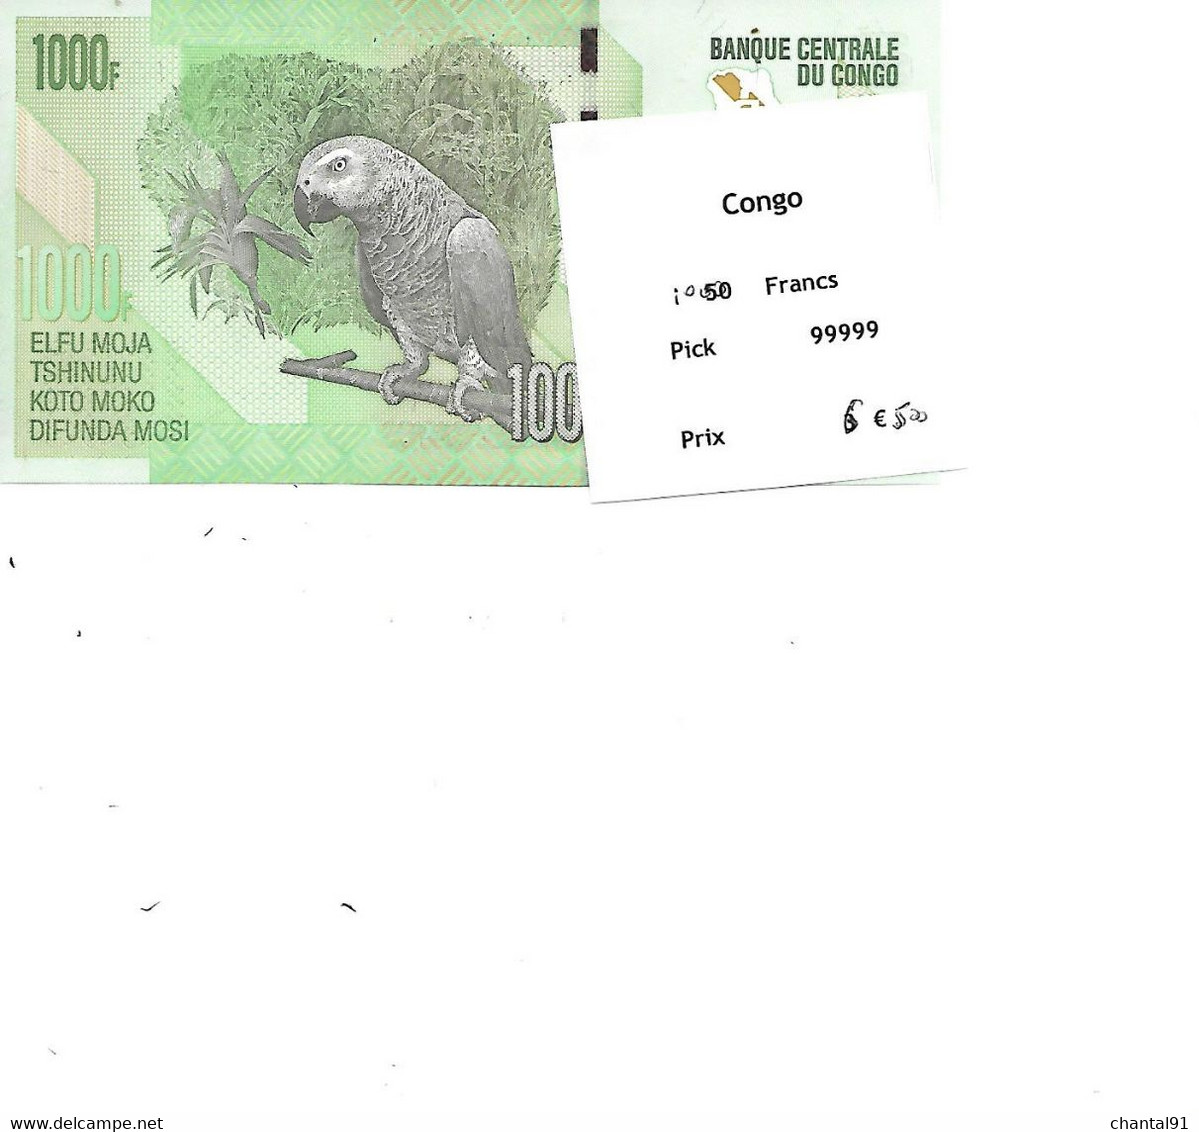 CONGO BILLET 1000 FRANCS PICK 99999 - Congo (Democratische Republiek 1998)